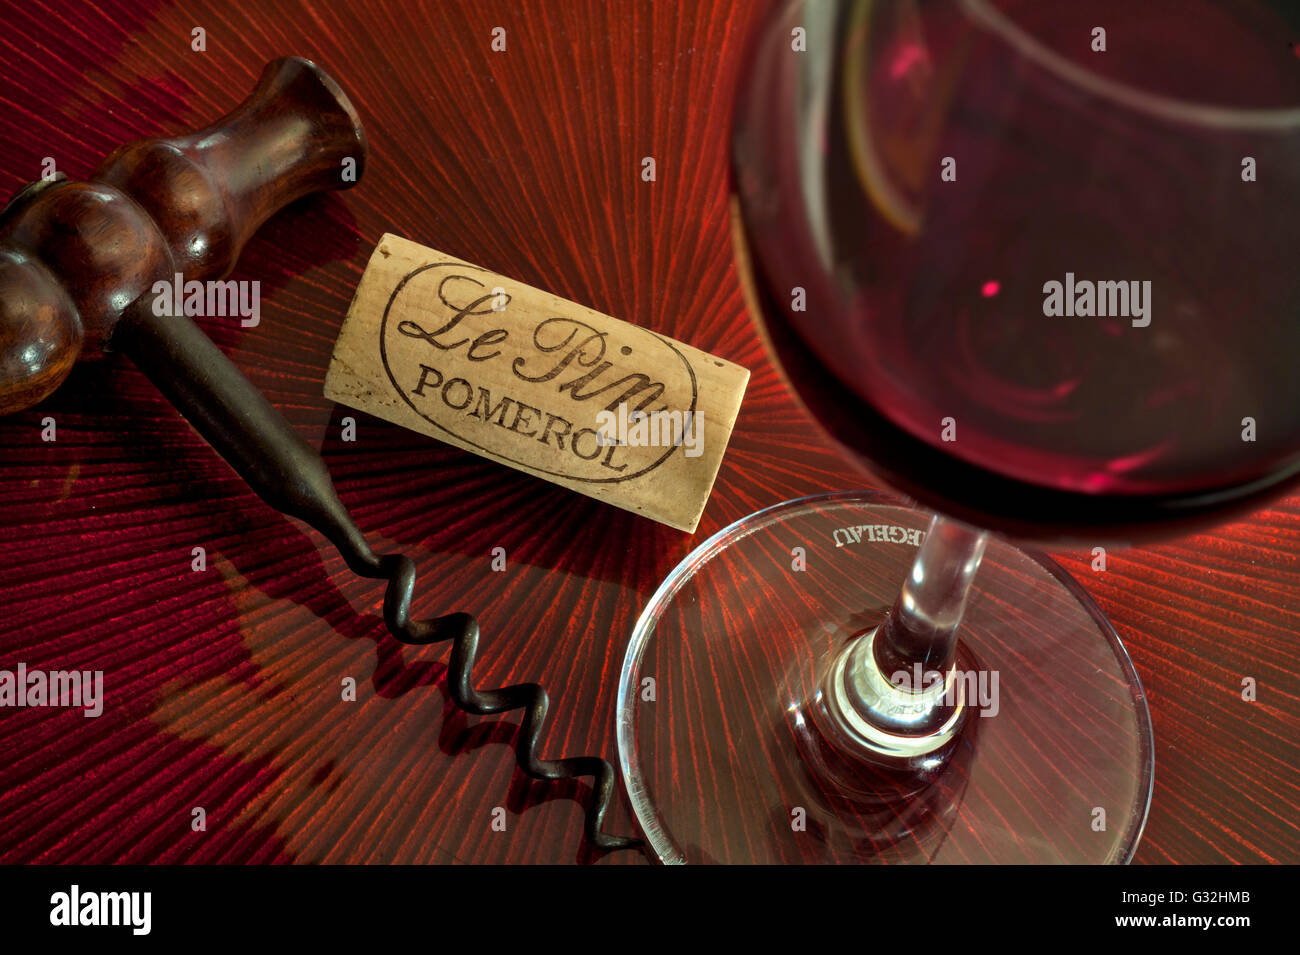 CHATEAU LE PIN Pomerol degustazione di vino di lusso concetto di situazione con Tradizionale cavatappi di vino rosso e tappo Chateau le pin Bordeaux Francia Foto Stock